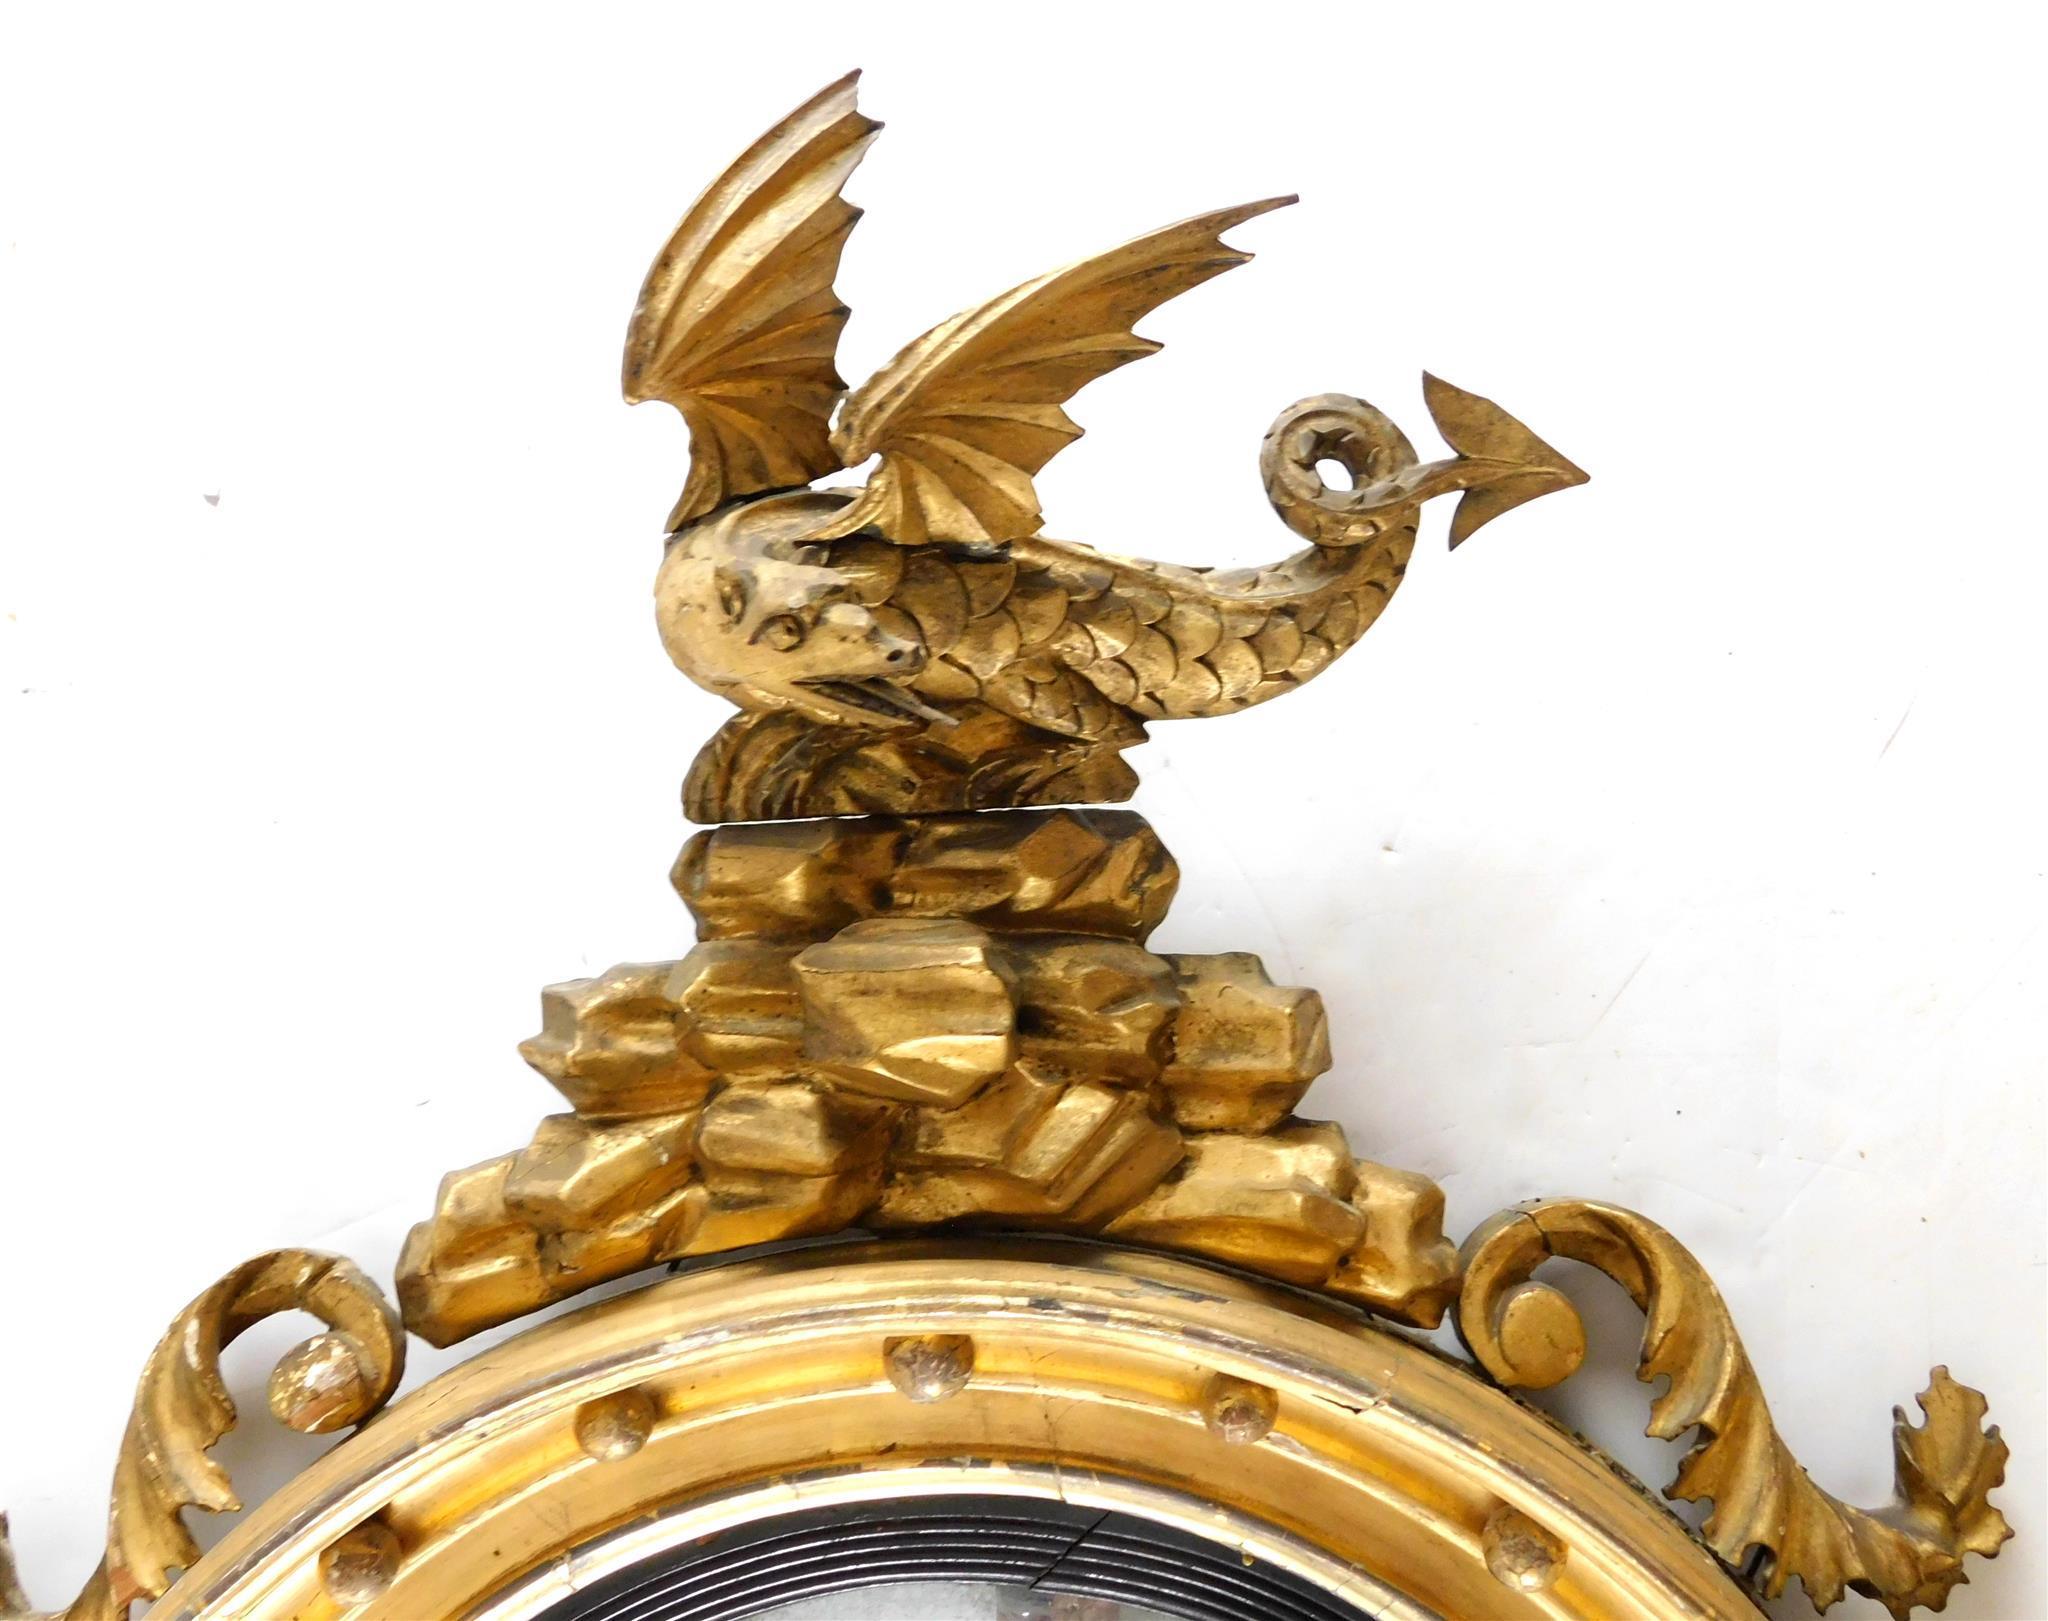 Ancien miroir convexe en bois doré sculpté de style Régence anglaise, datant d'environ 1820.
Le miroir convexe est entouré d'une élégante baguette ébonisée et d'une frise moulurée en bois doré avec des montures en forme de boules. Le pendentif